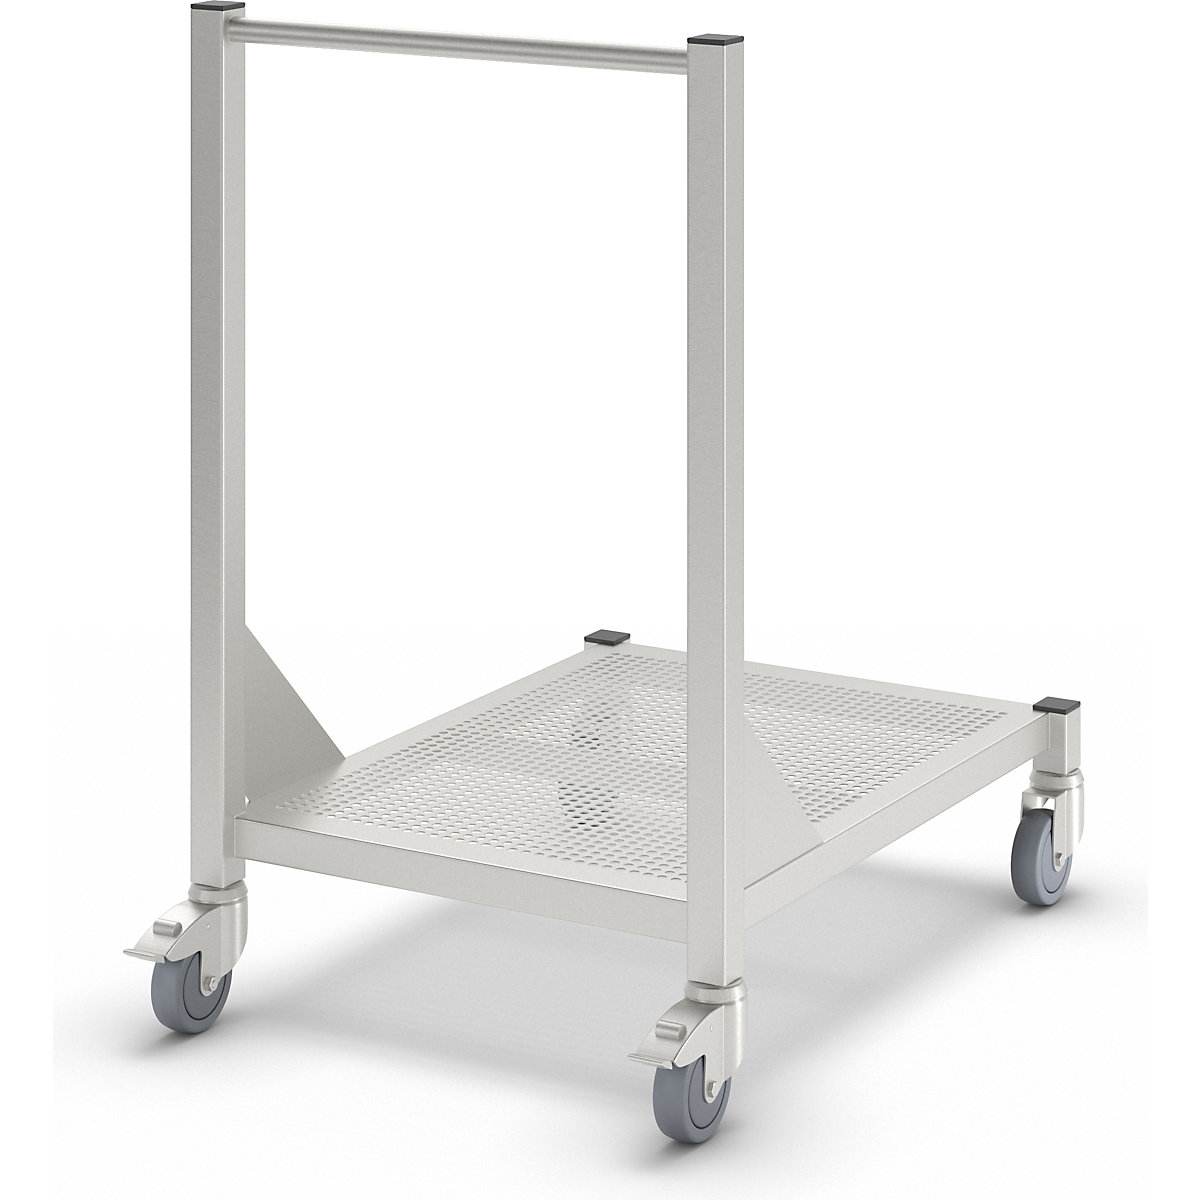 Mobil asztal steril helyiségekbe, nemesacélból, 1 szint, hossz 800 mm-2